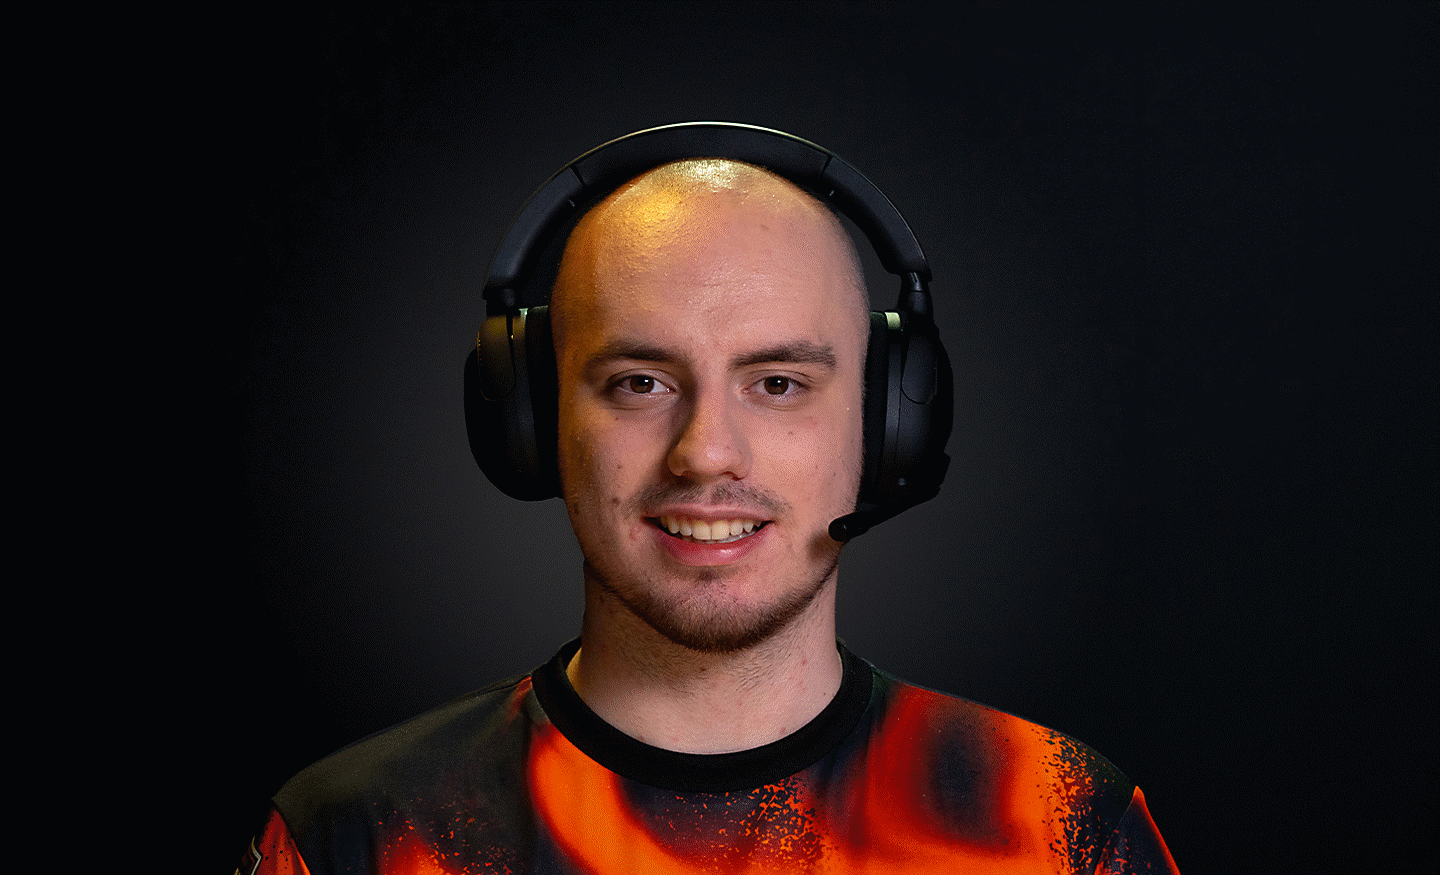 Profilna slika Derkea kako nosi par crnih naglavnih slušalica INZONE H5